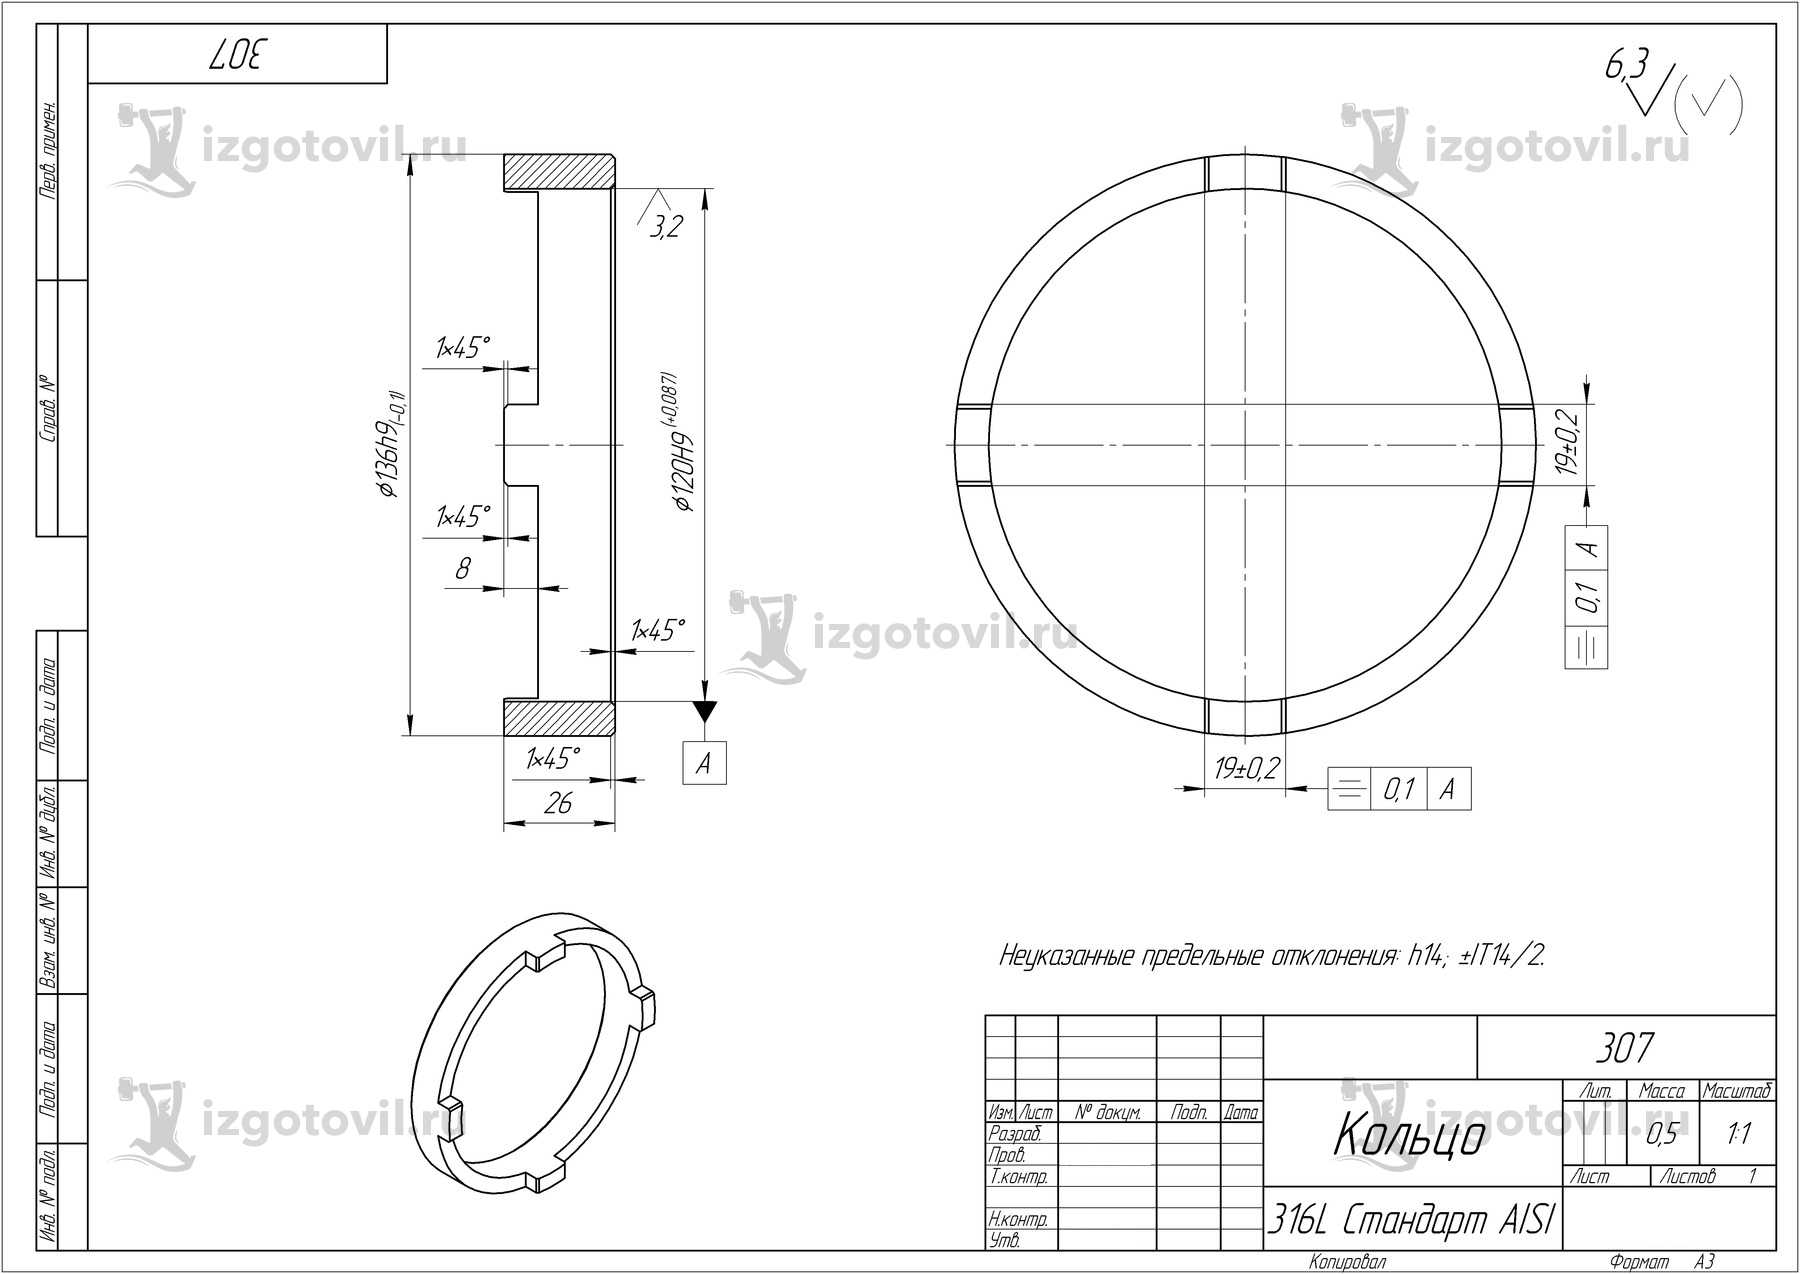 Изготовление деталей по чертежам: кольца, стакан, диск и нож дисковый